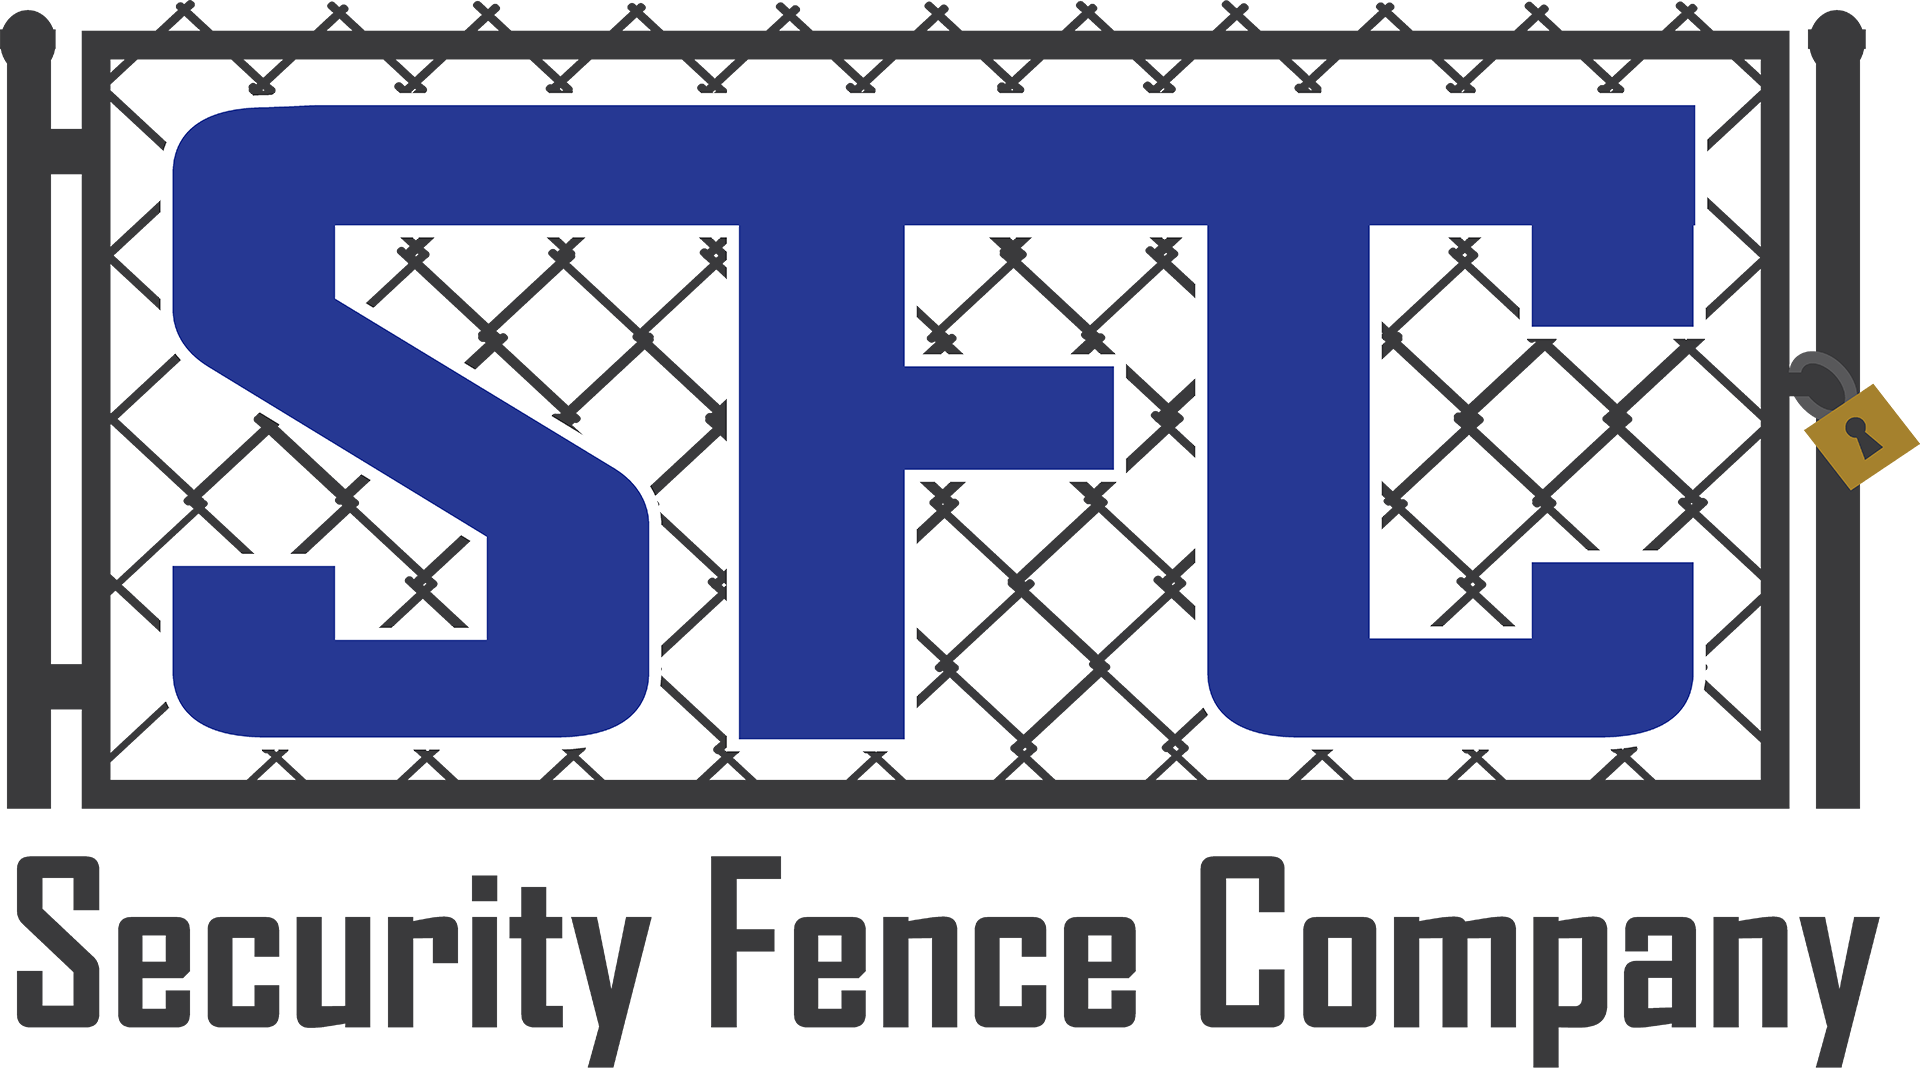 security fence company - logo